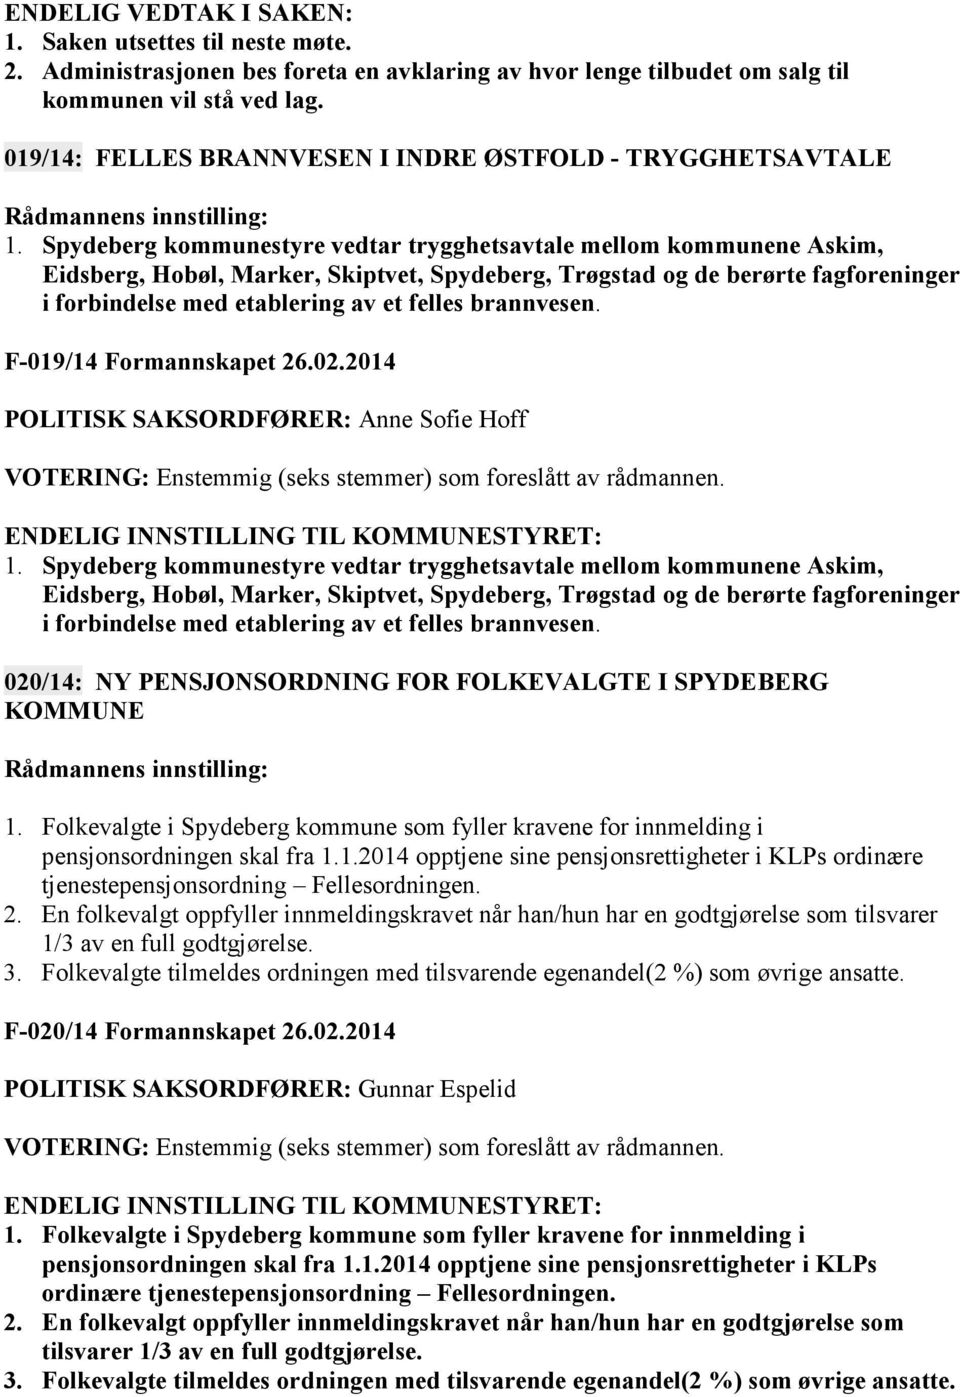 Spydeberg kommunestyre vedtar trygghetsavtale mellom kommunene Askim, Eidsberg, Hobøl, Marker, Skiptvet, Spydeberg, Trøgstad og de berørte fagforeninger i forbindelse med etablering av et felles